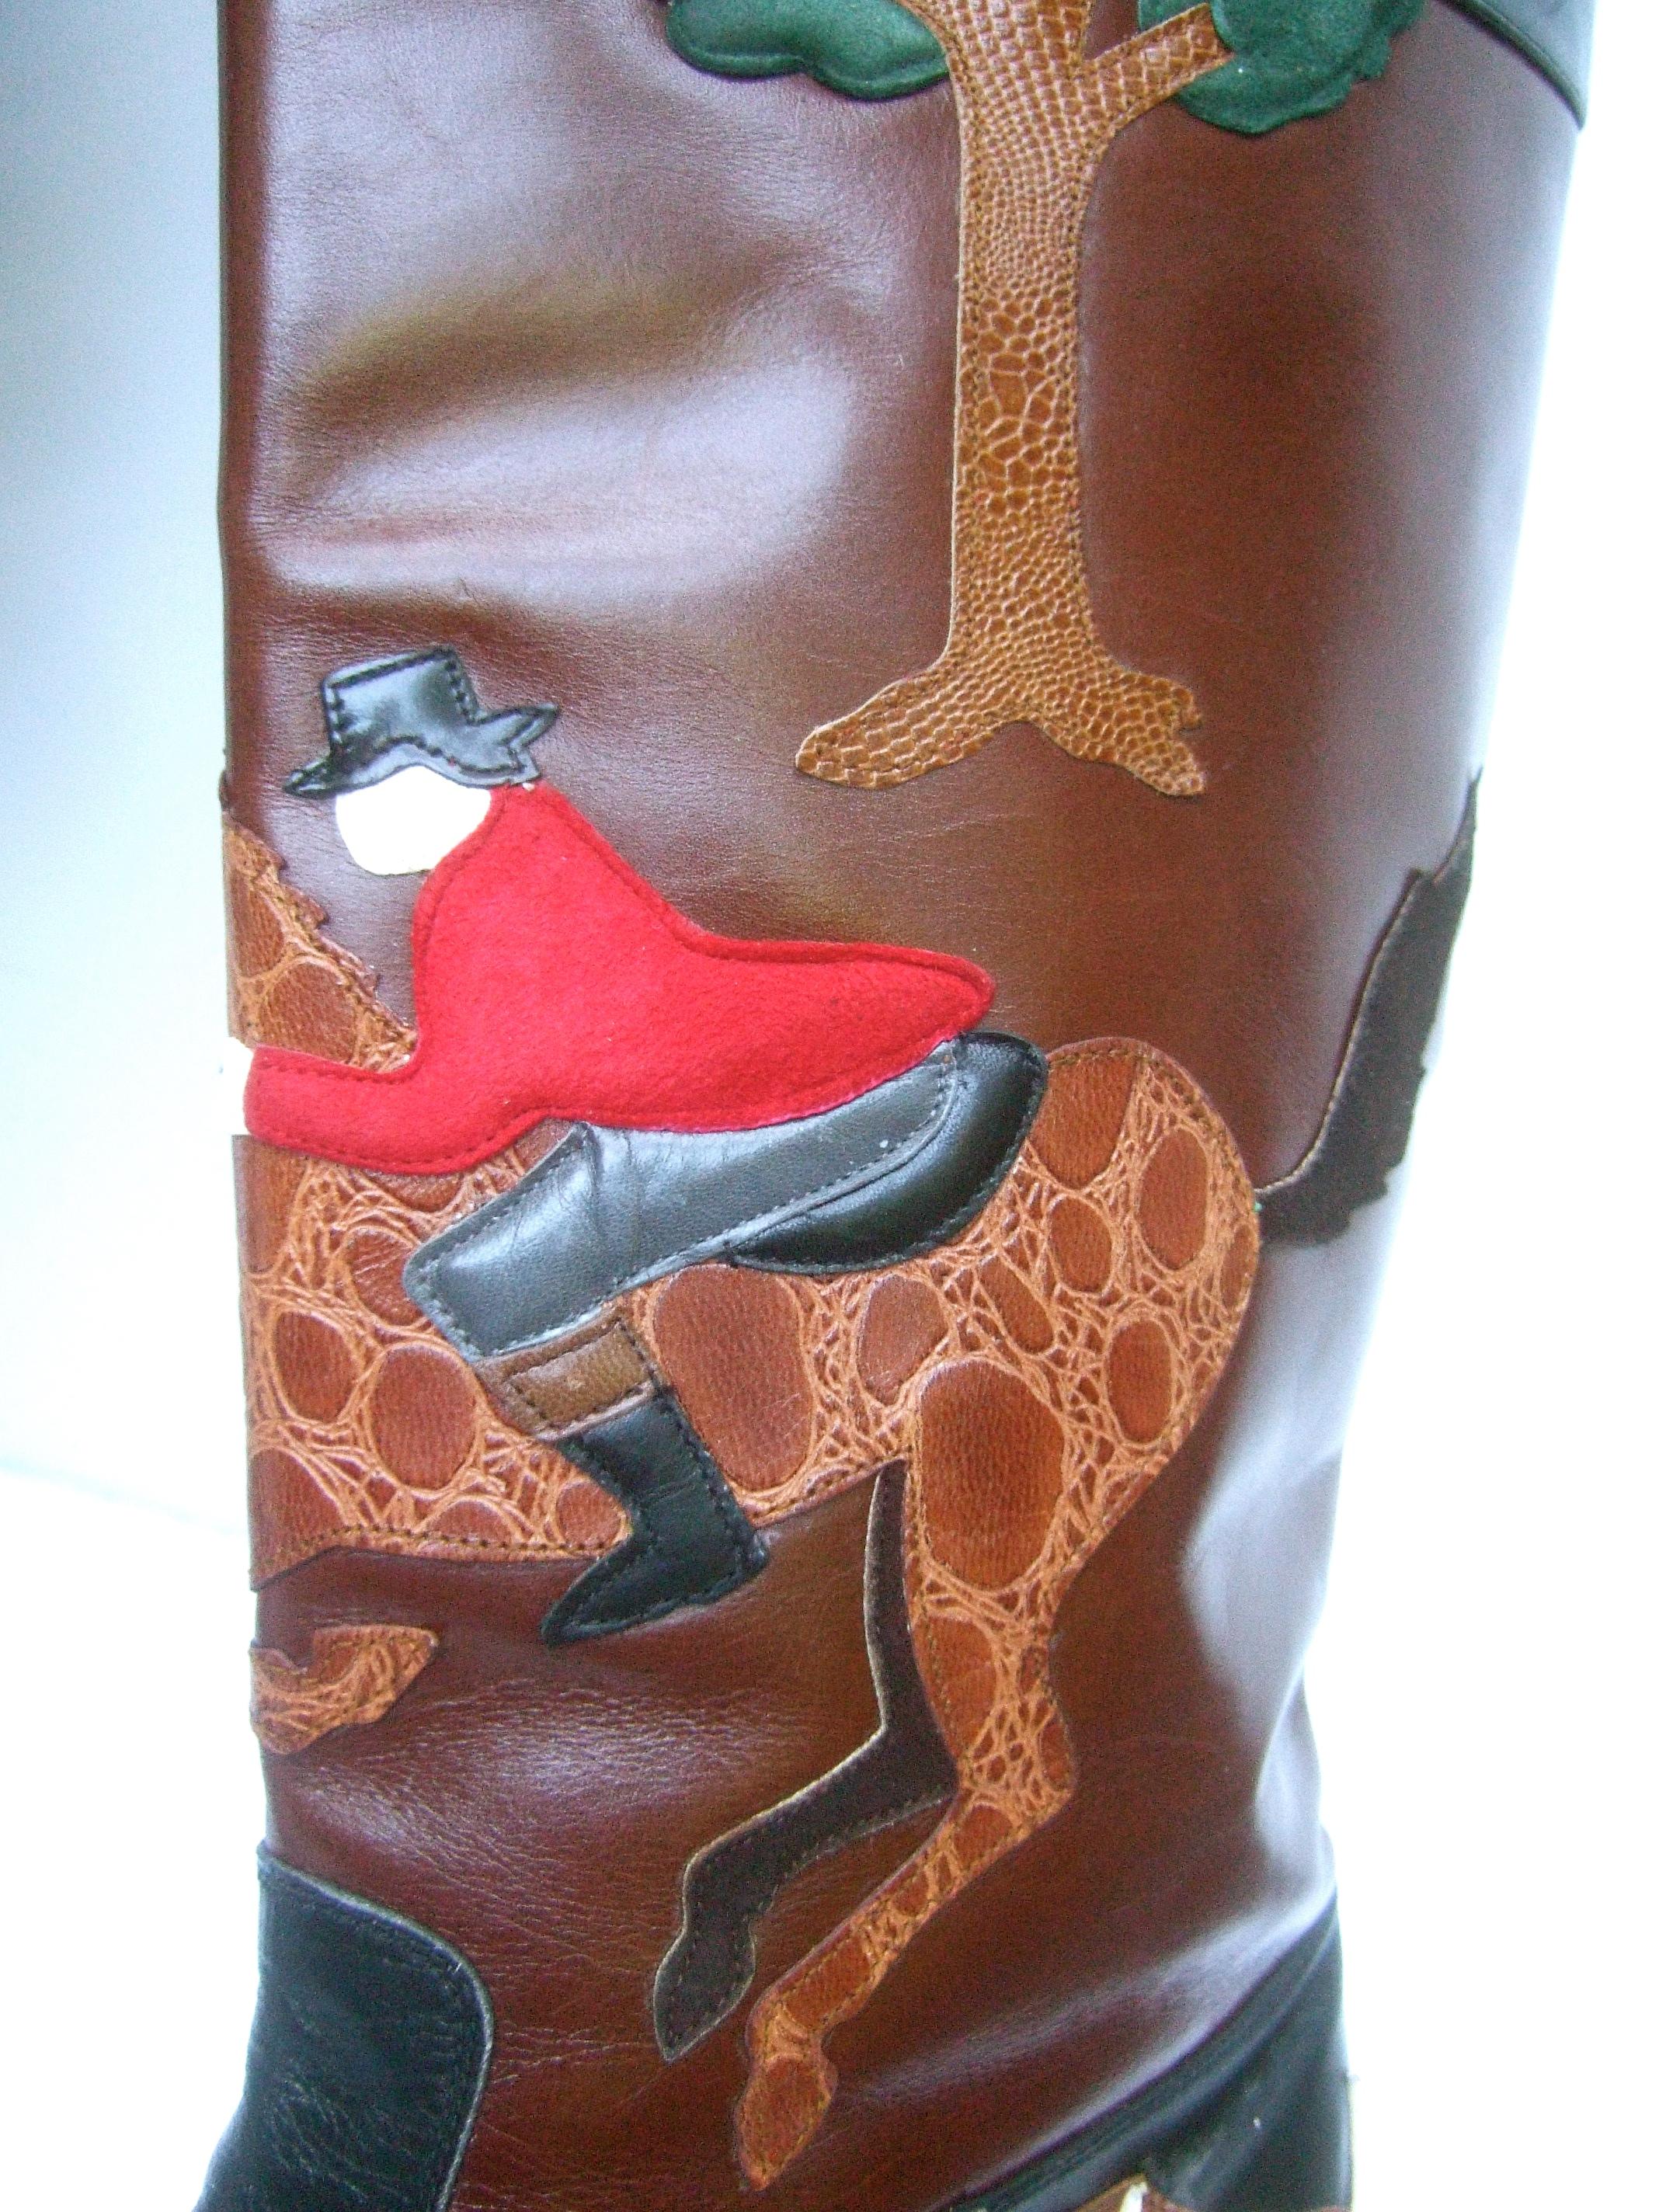 Rare Unique Hunt Scene Leather & Suede Appliqué Boots US Size 9 M c 1990 9